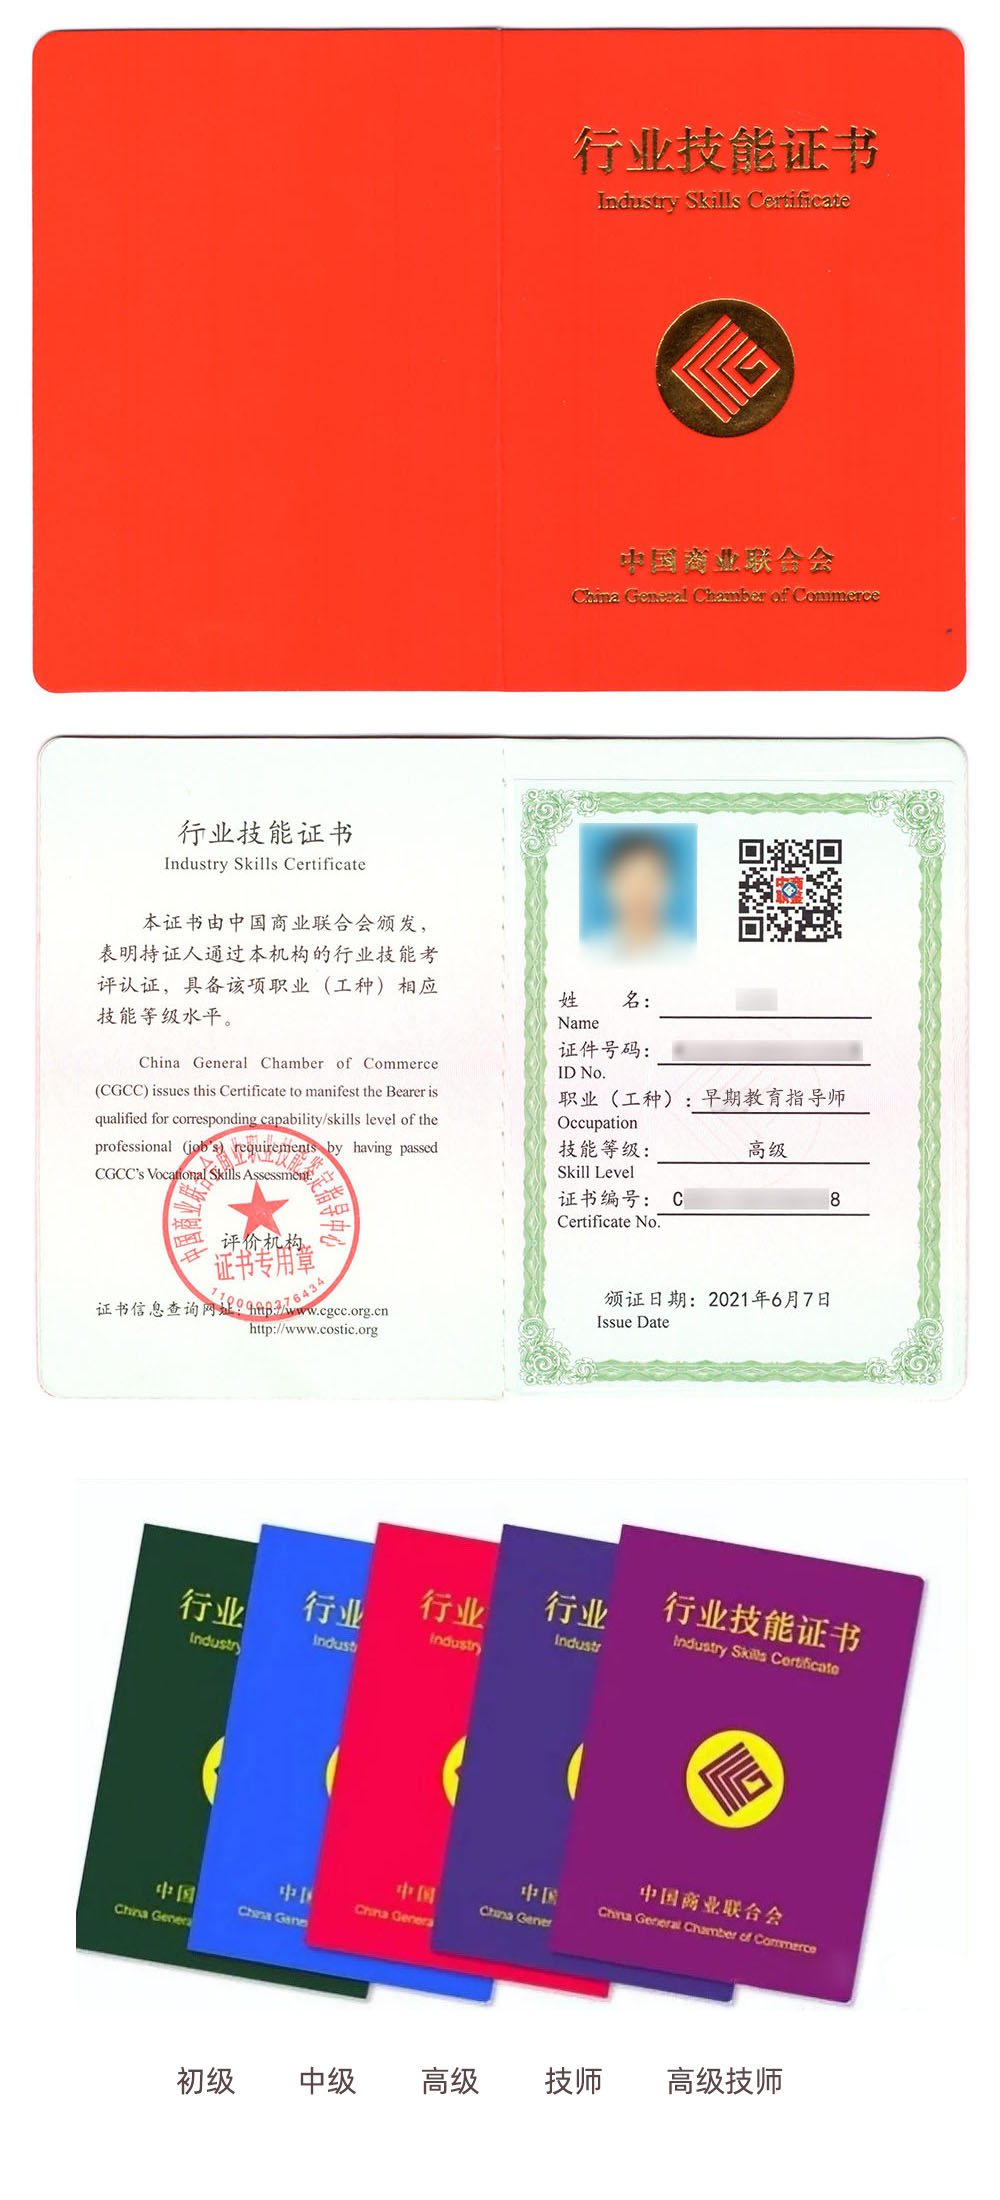 中国商业联合会商业职业技能鉴定指导中心 行业技能证书 早期教育指导师证证书样本